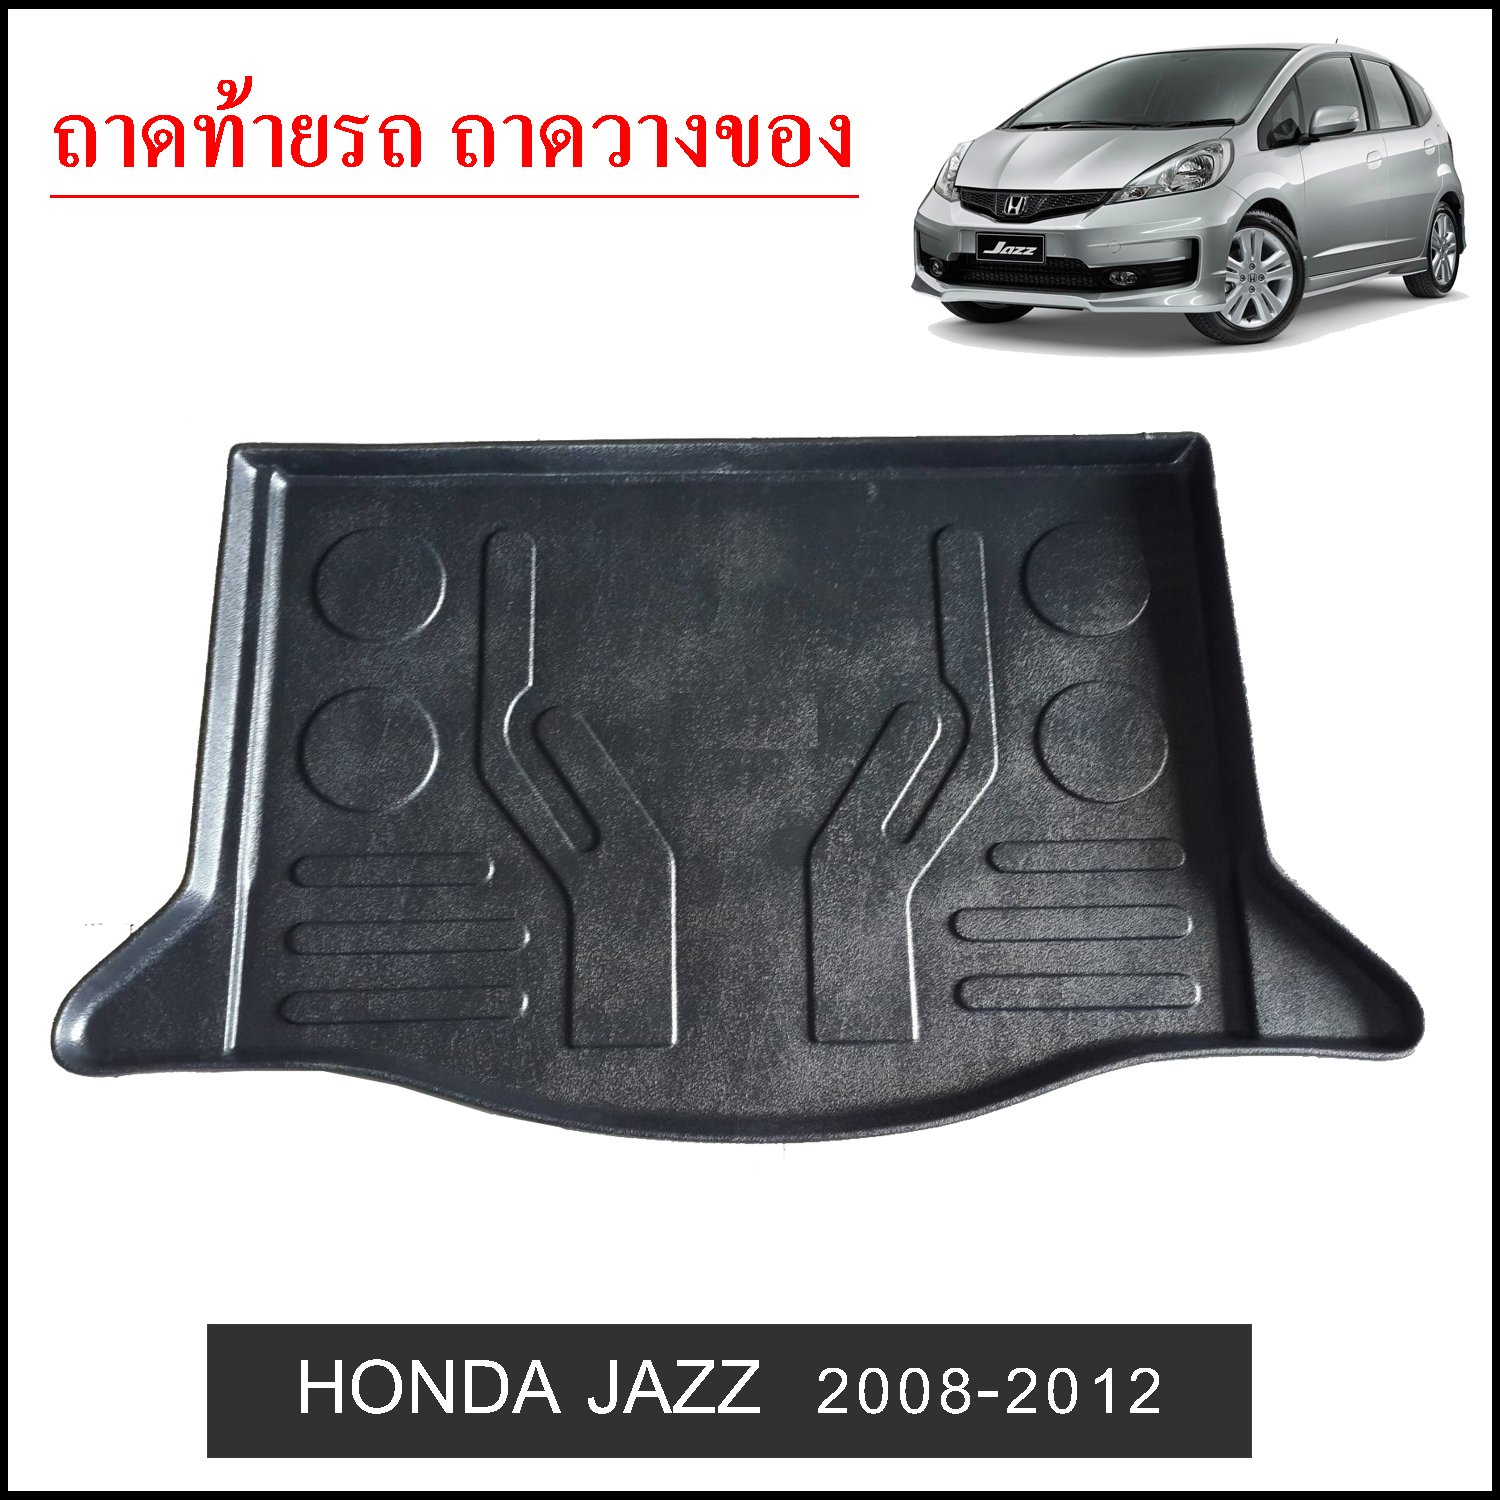 ถาดท้ายวางของ Honda Jazz 2008-2012